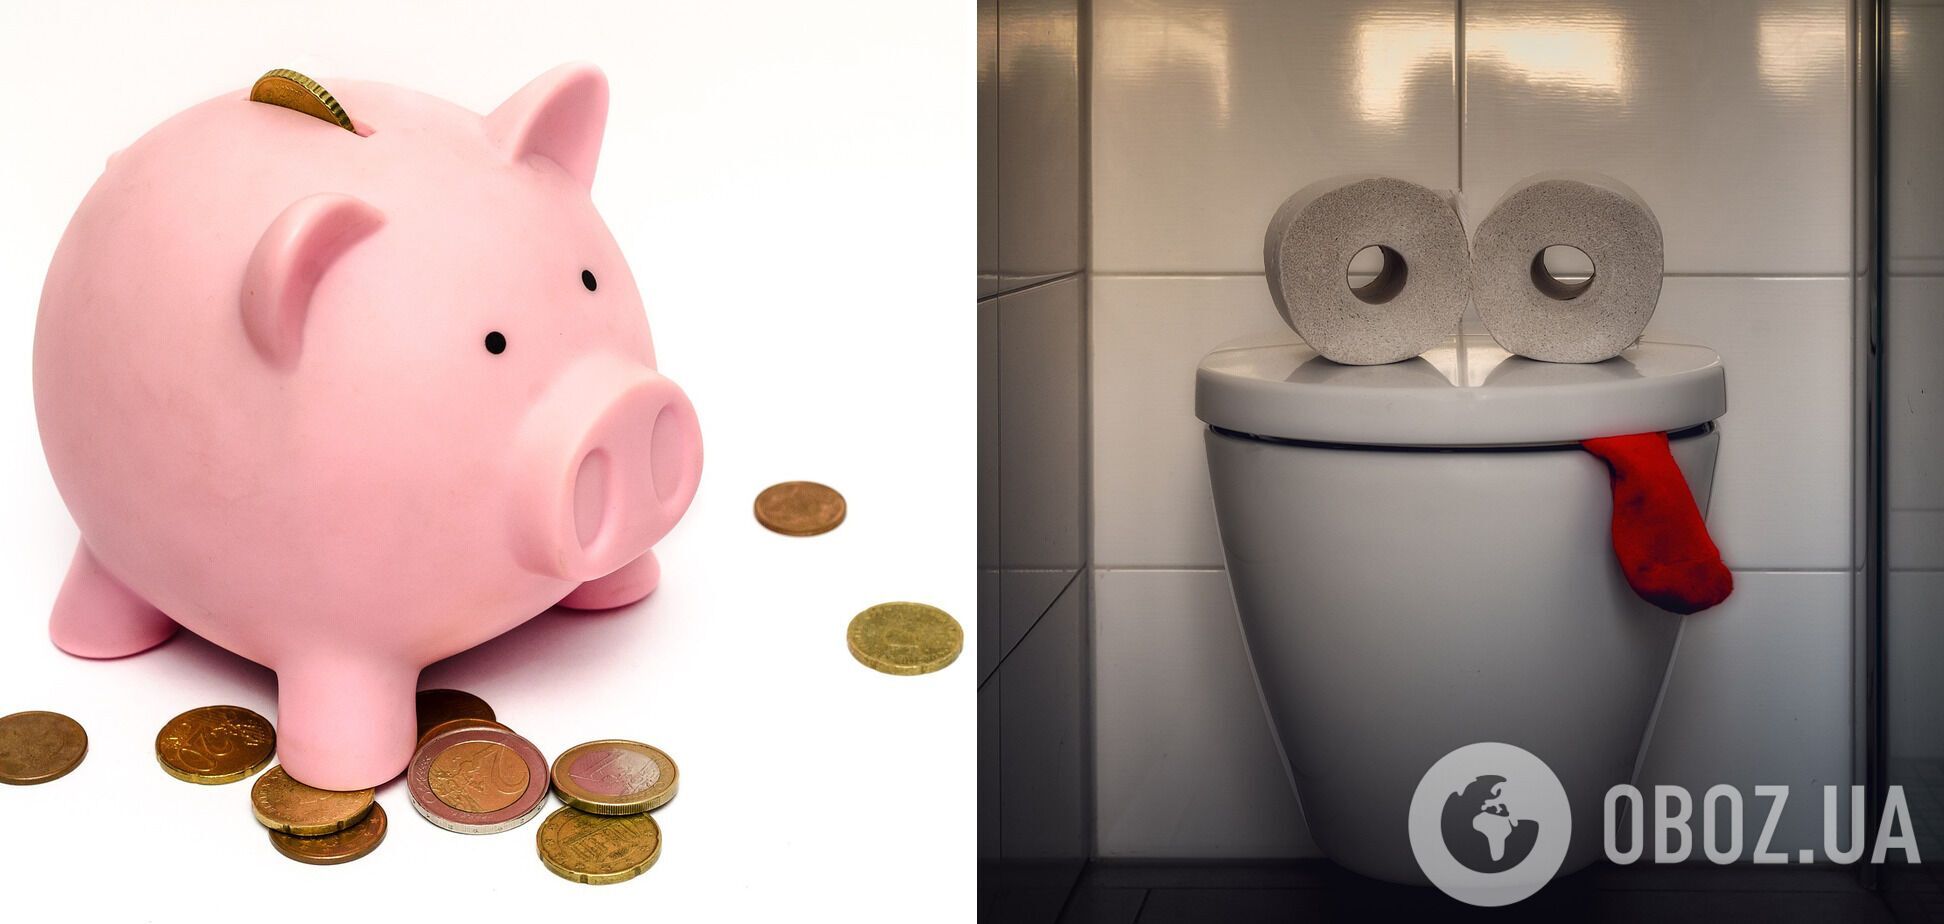 Благодаря тканевым туалетным салфеткам американка экономит в год 240 долларов.